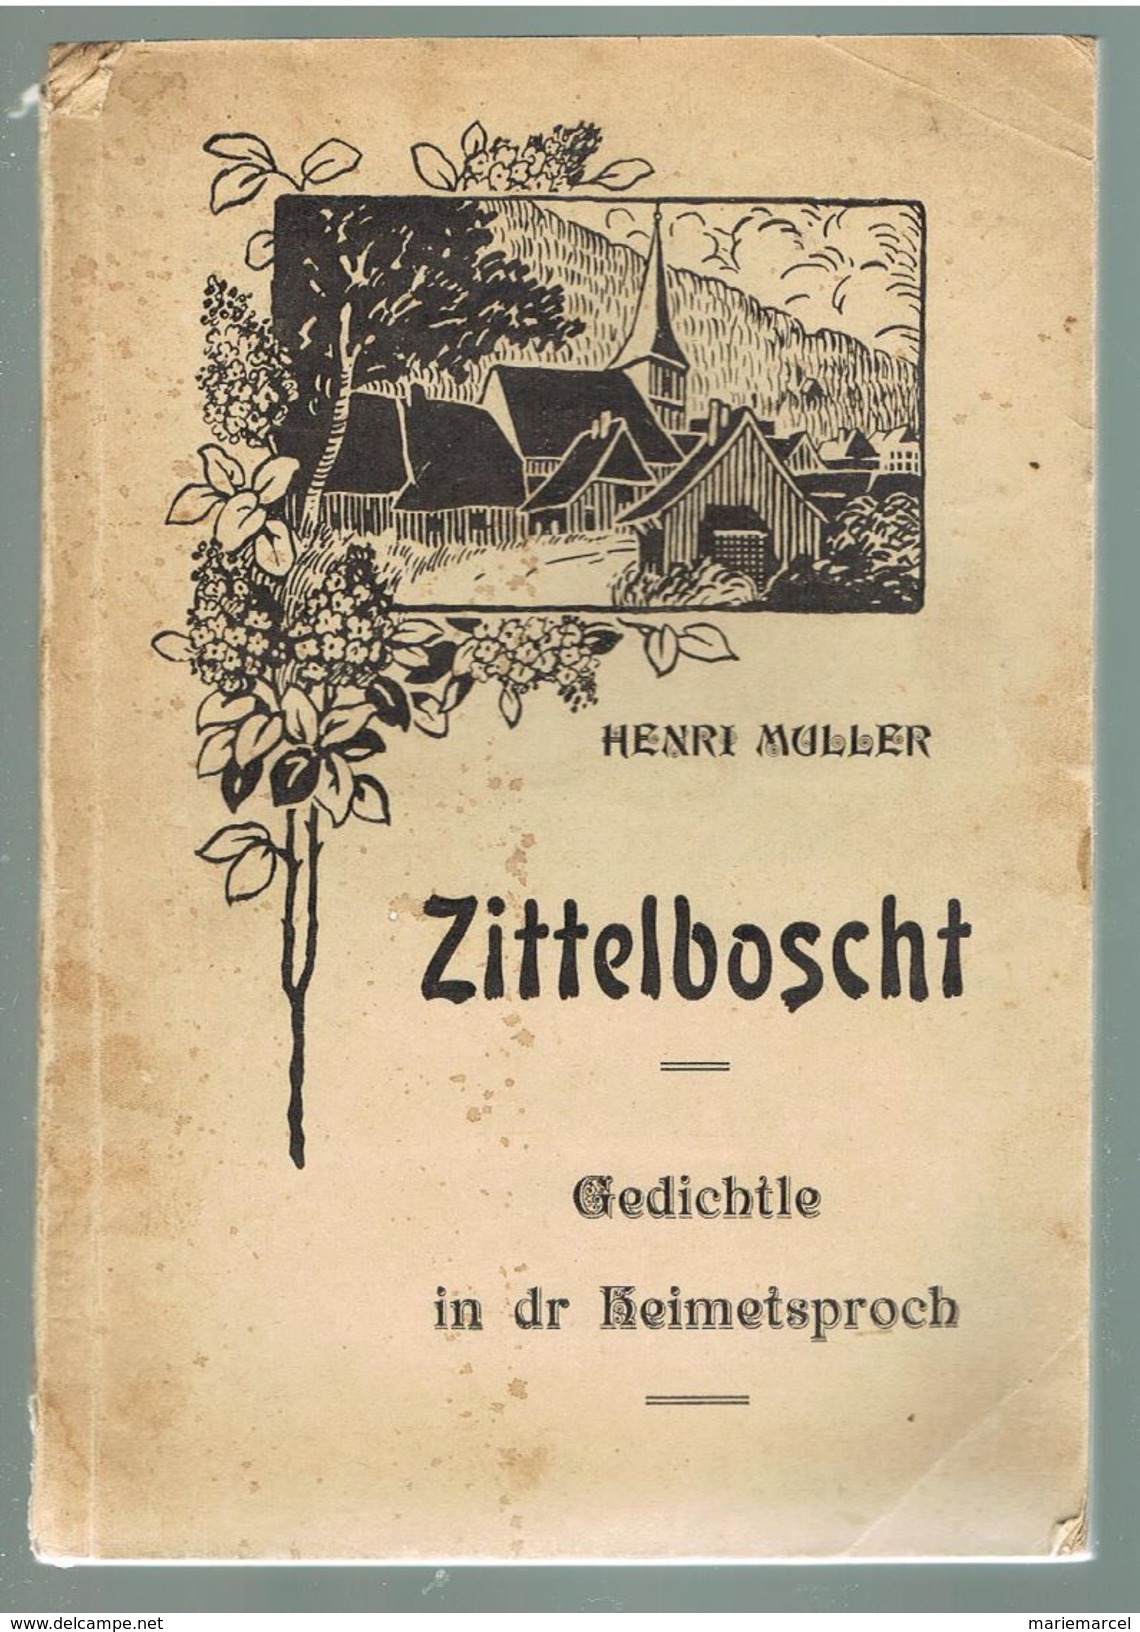 POESIE. HENRI MULLER FICHTER. ZITTELBOSCHT. GEDICHTLE IN DR HEIMETSPROCH. 1922. Dédicacé Par L'auteur. - Poesia